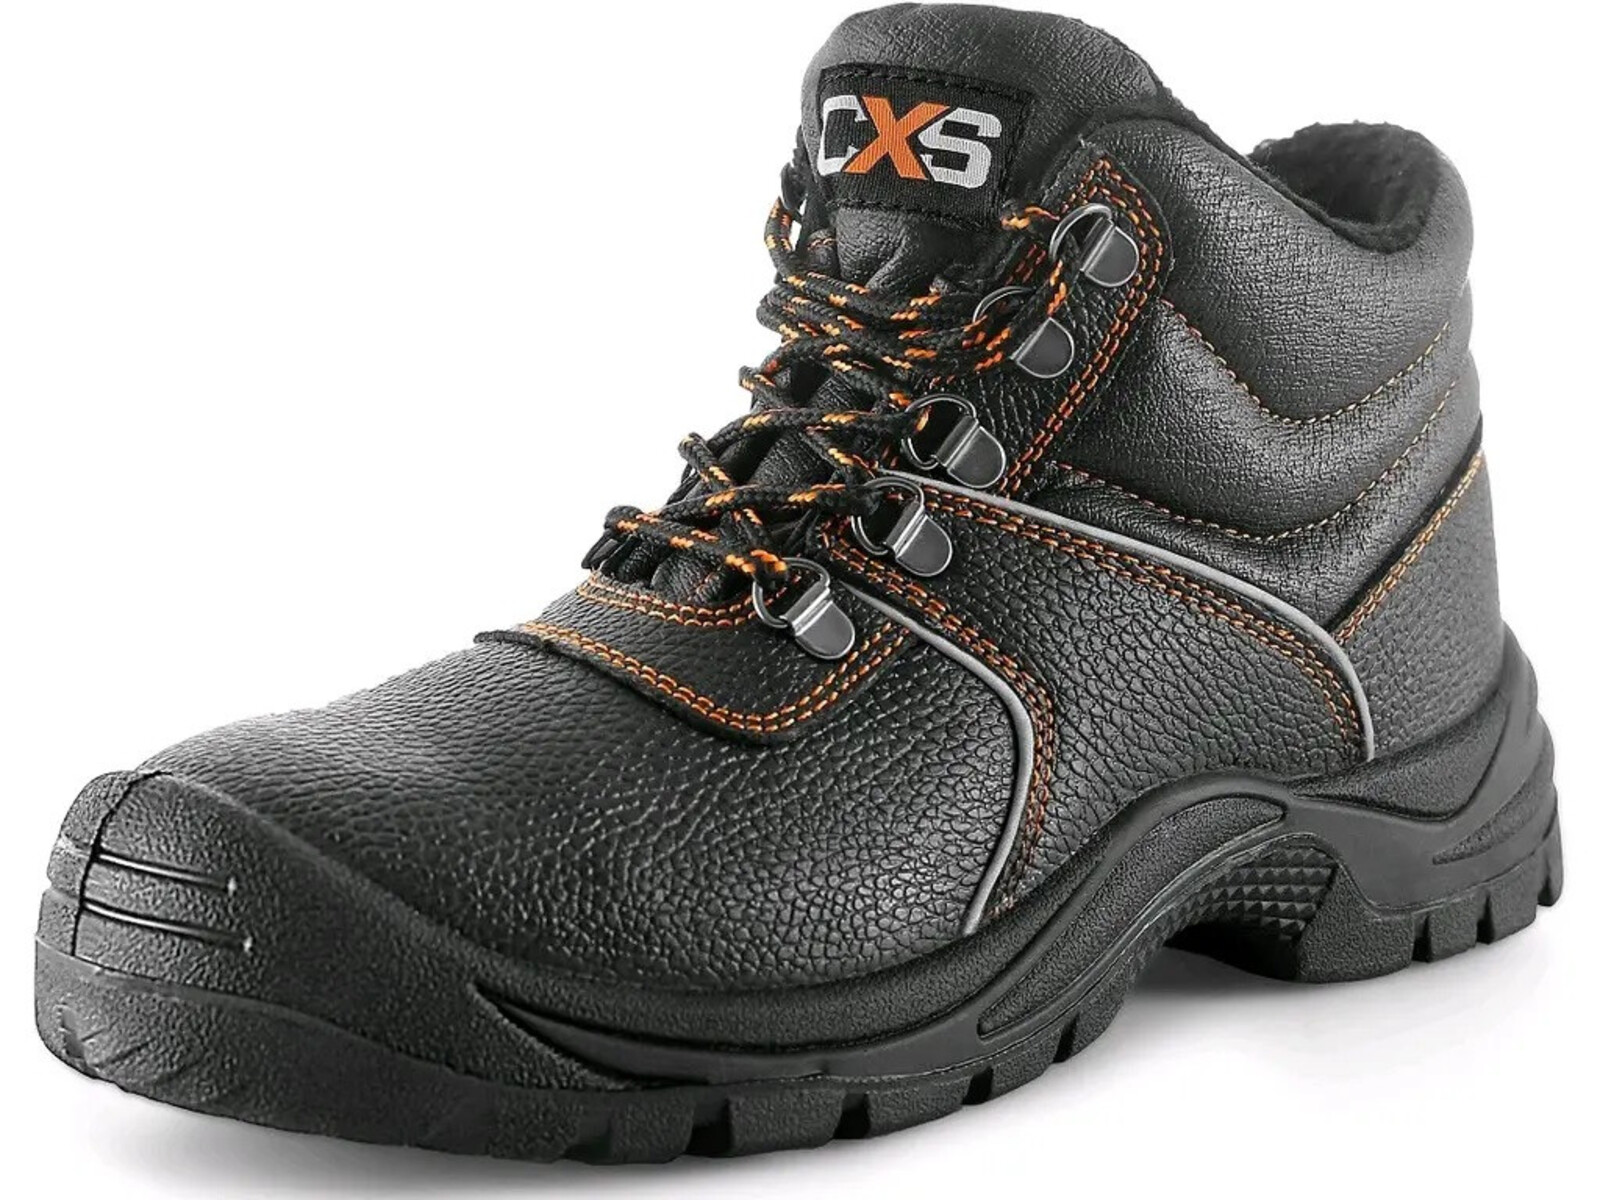 Zimná bezpečnostná členková obuv CXS Stone Apatit Winter S3 SRC - veľkosť: 48, farba: čierna/oranžová